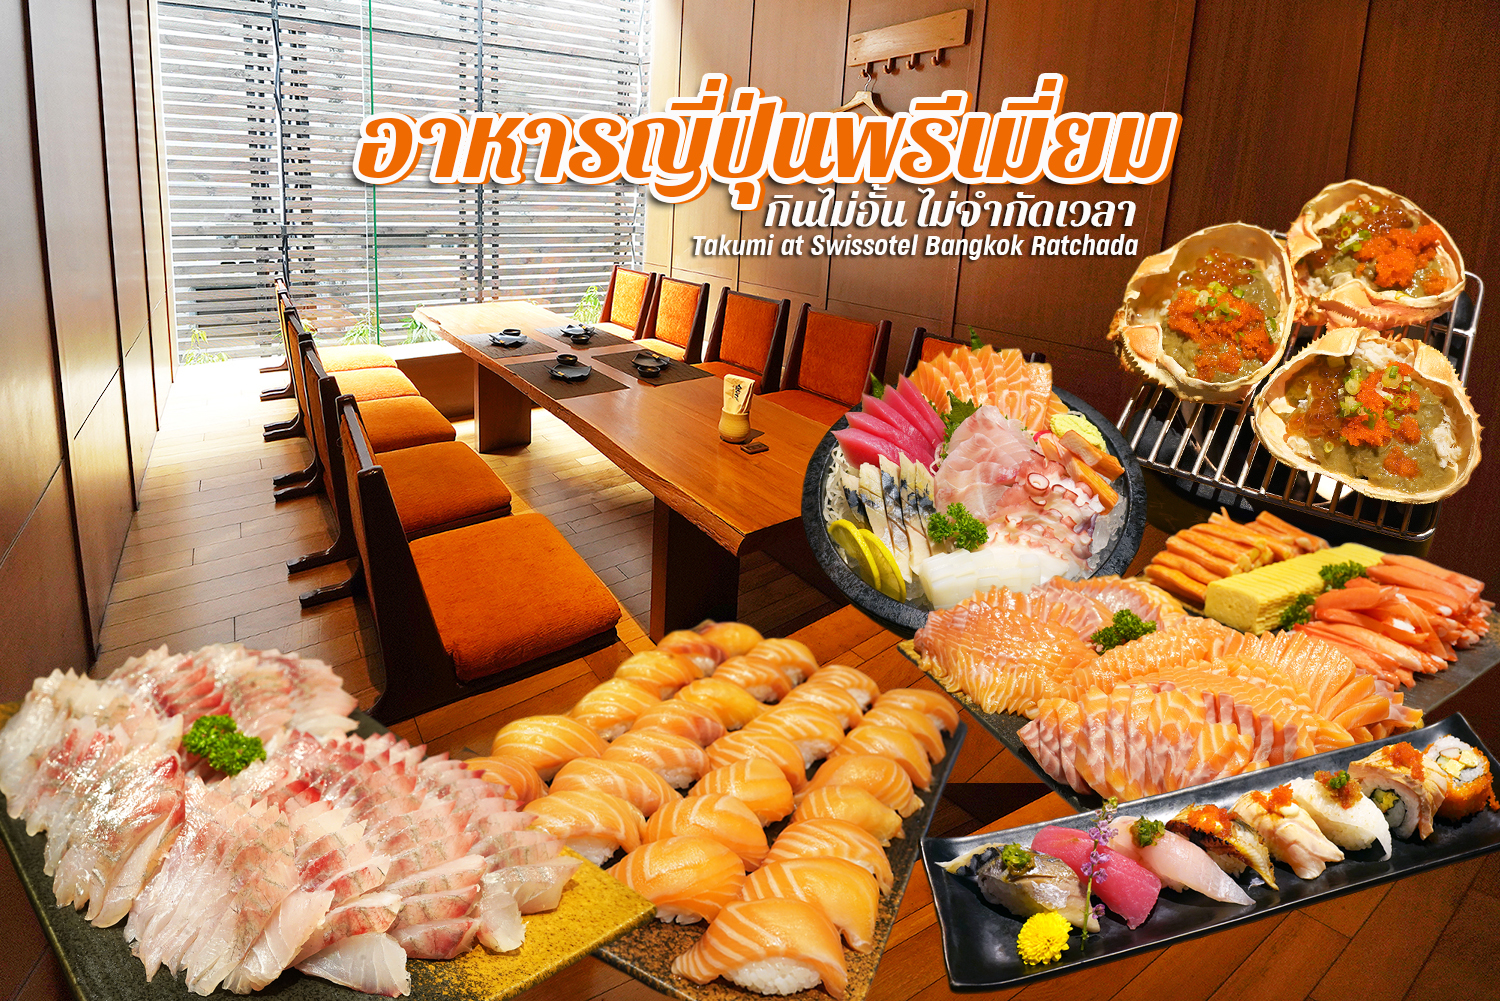 กินบุฟเฟ่ต์อาหารญี่ปุ่นพรีเมี่ยม ซาชิมิ หอยนางรม มันปู สเต็กเนื้อไม่อั้น พร้อมโปรมา 3 จ่าย 2 ฟินไปอี๊ก… Takumi โรงแรมสวิสโซเทล กรุงเทพ รัชดา